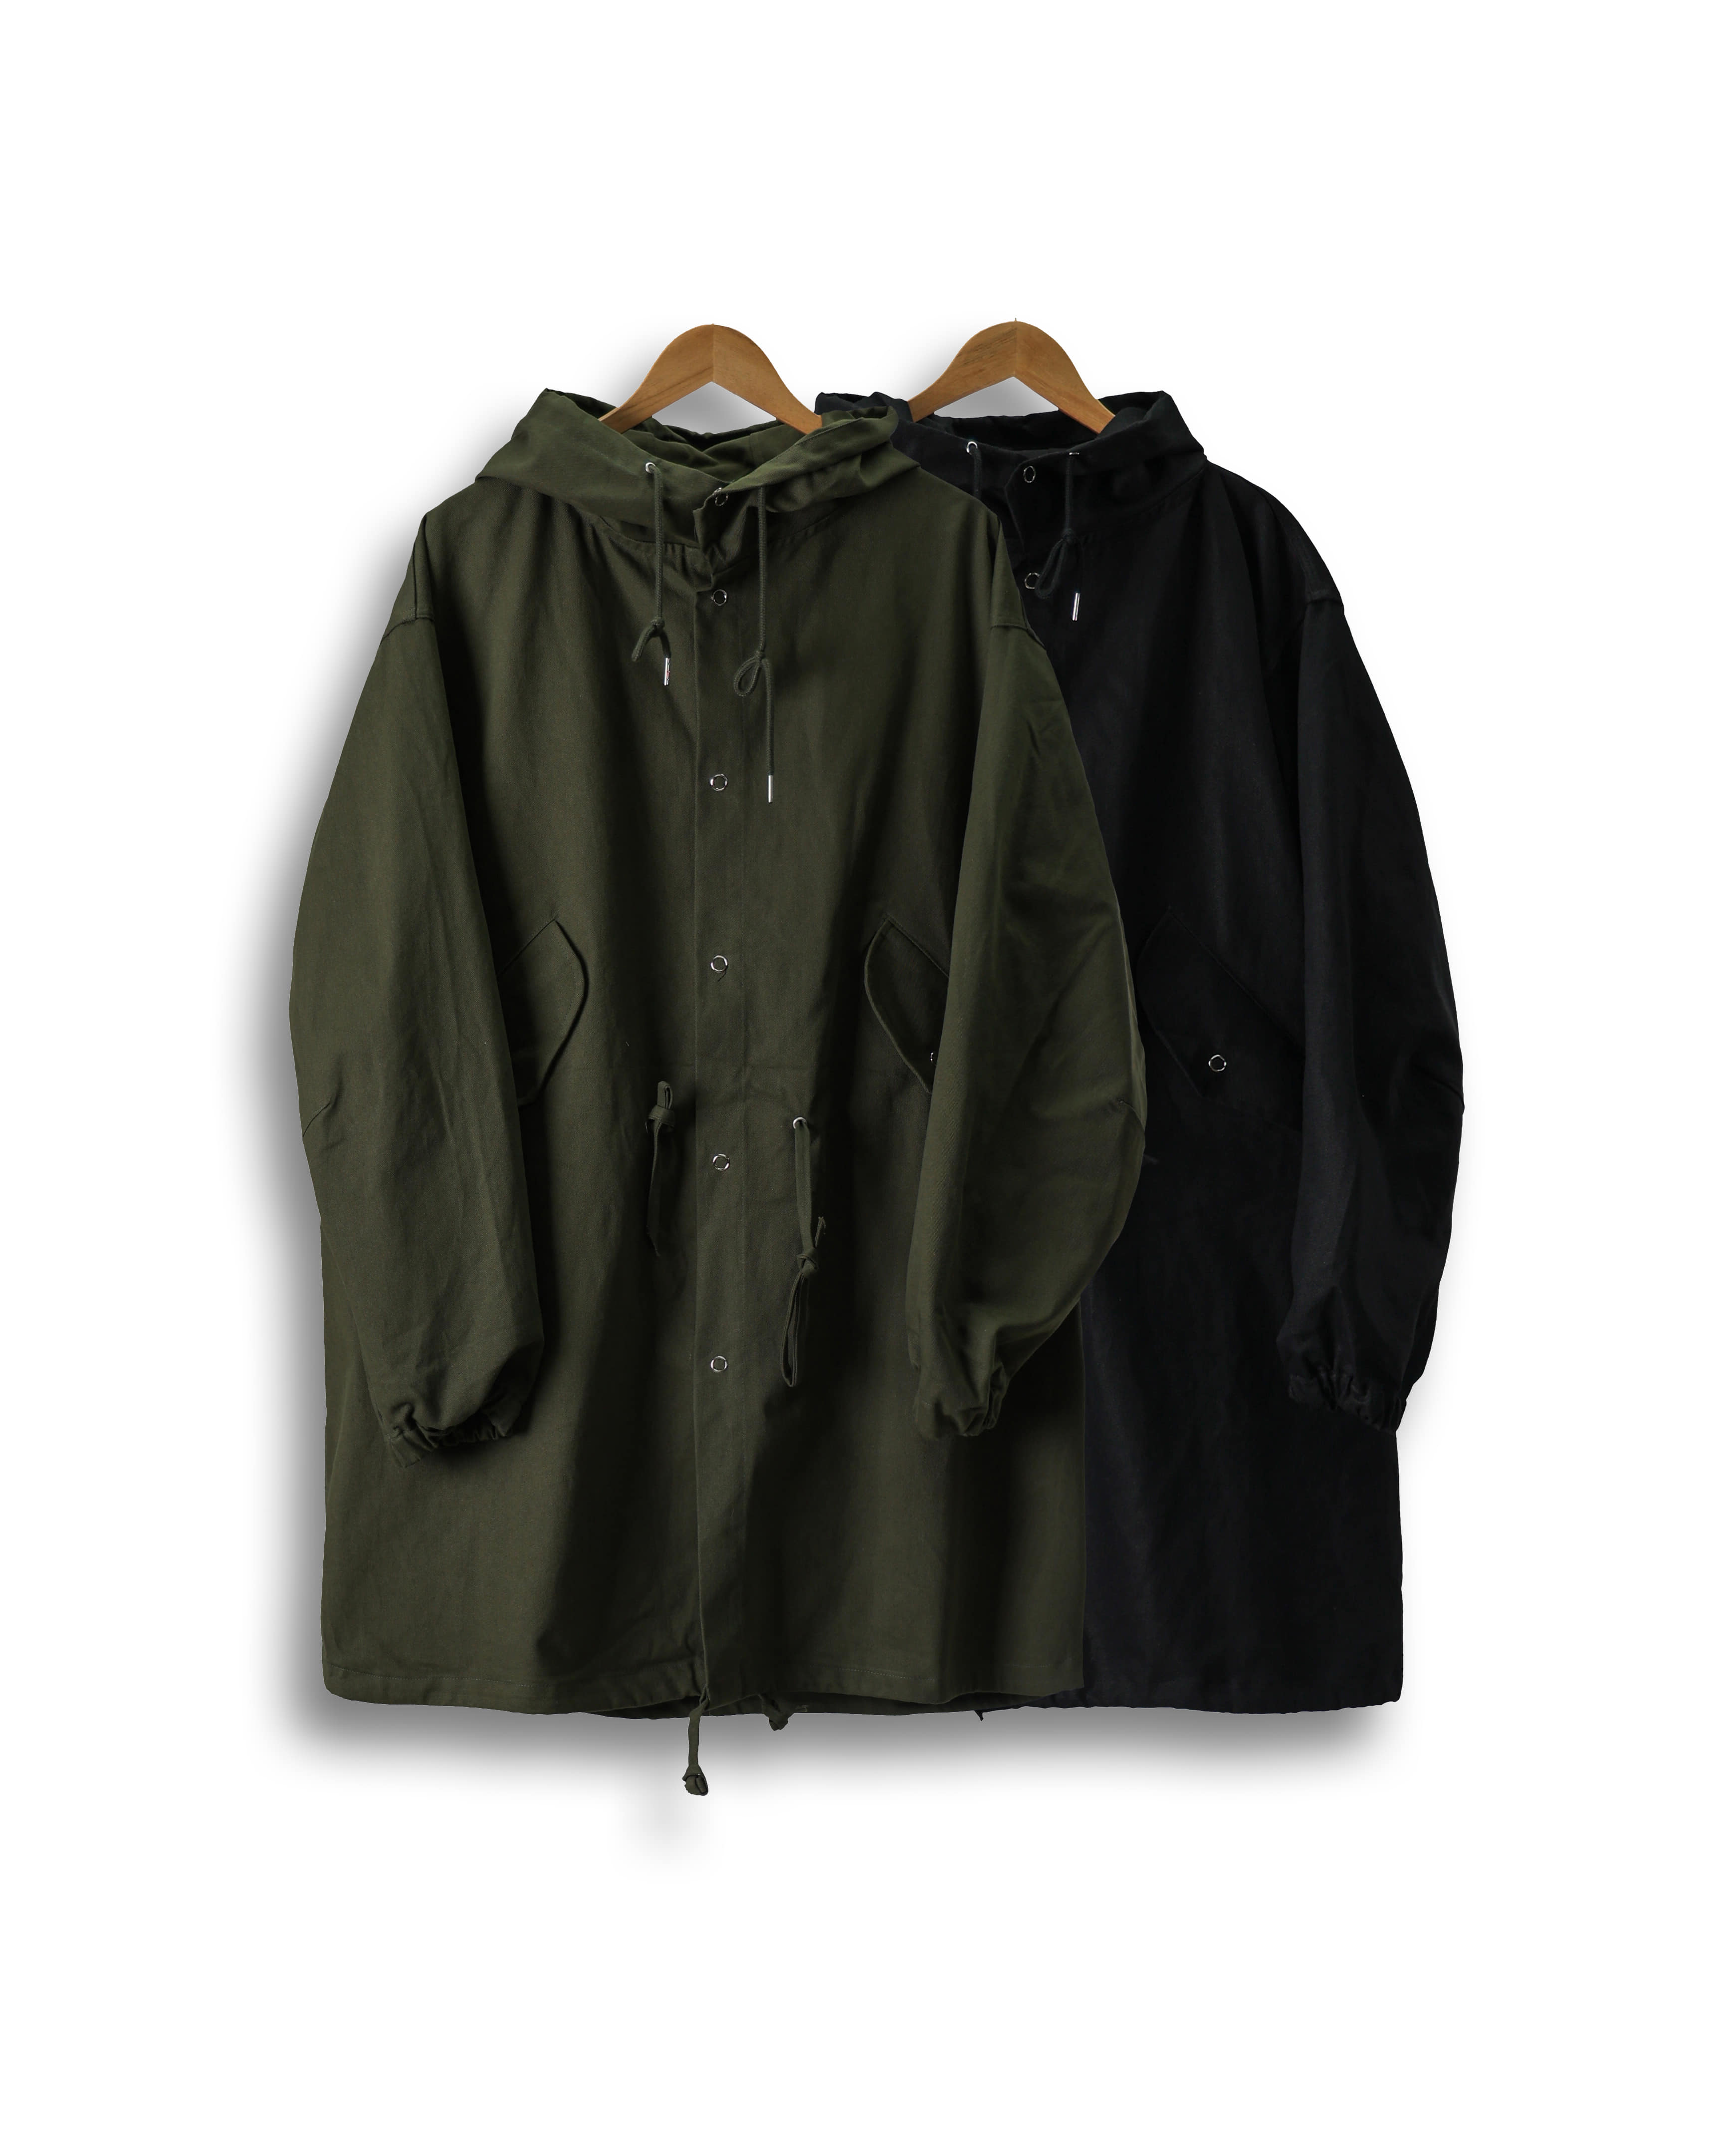 CLAP M-51 Military Fishtail Snap Jacket (Black/Khaki)